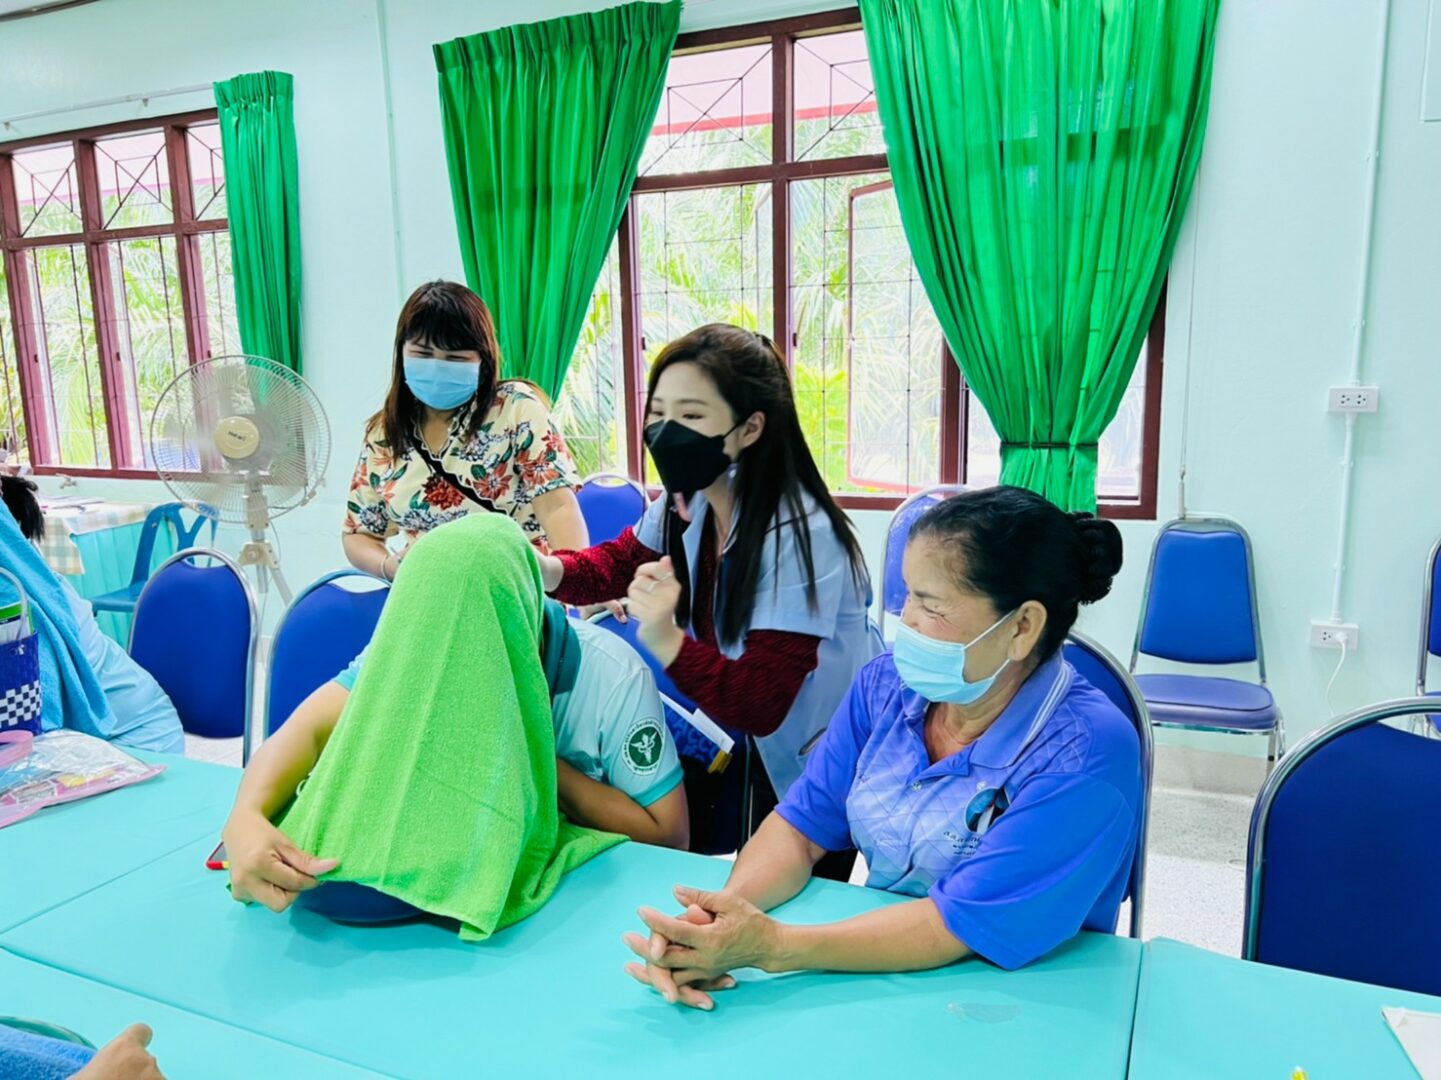 ม.วลัยลักษณ์ ร่วมกับ รพ.สต.ชุมชนสาธิตวลัยลักษณ์พัฒนา สร้างสุขภาวะชุมชนด้วยศาสตร์การแพทย์แผนไทยในยุคโควิด – 19